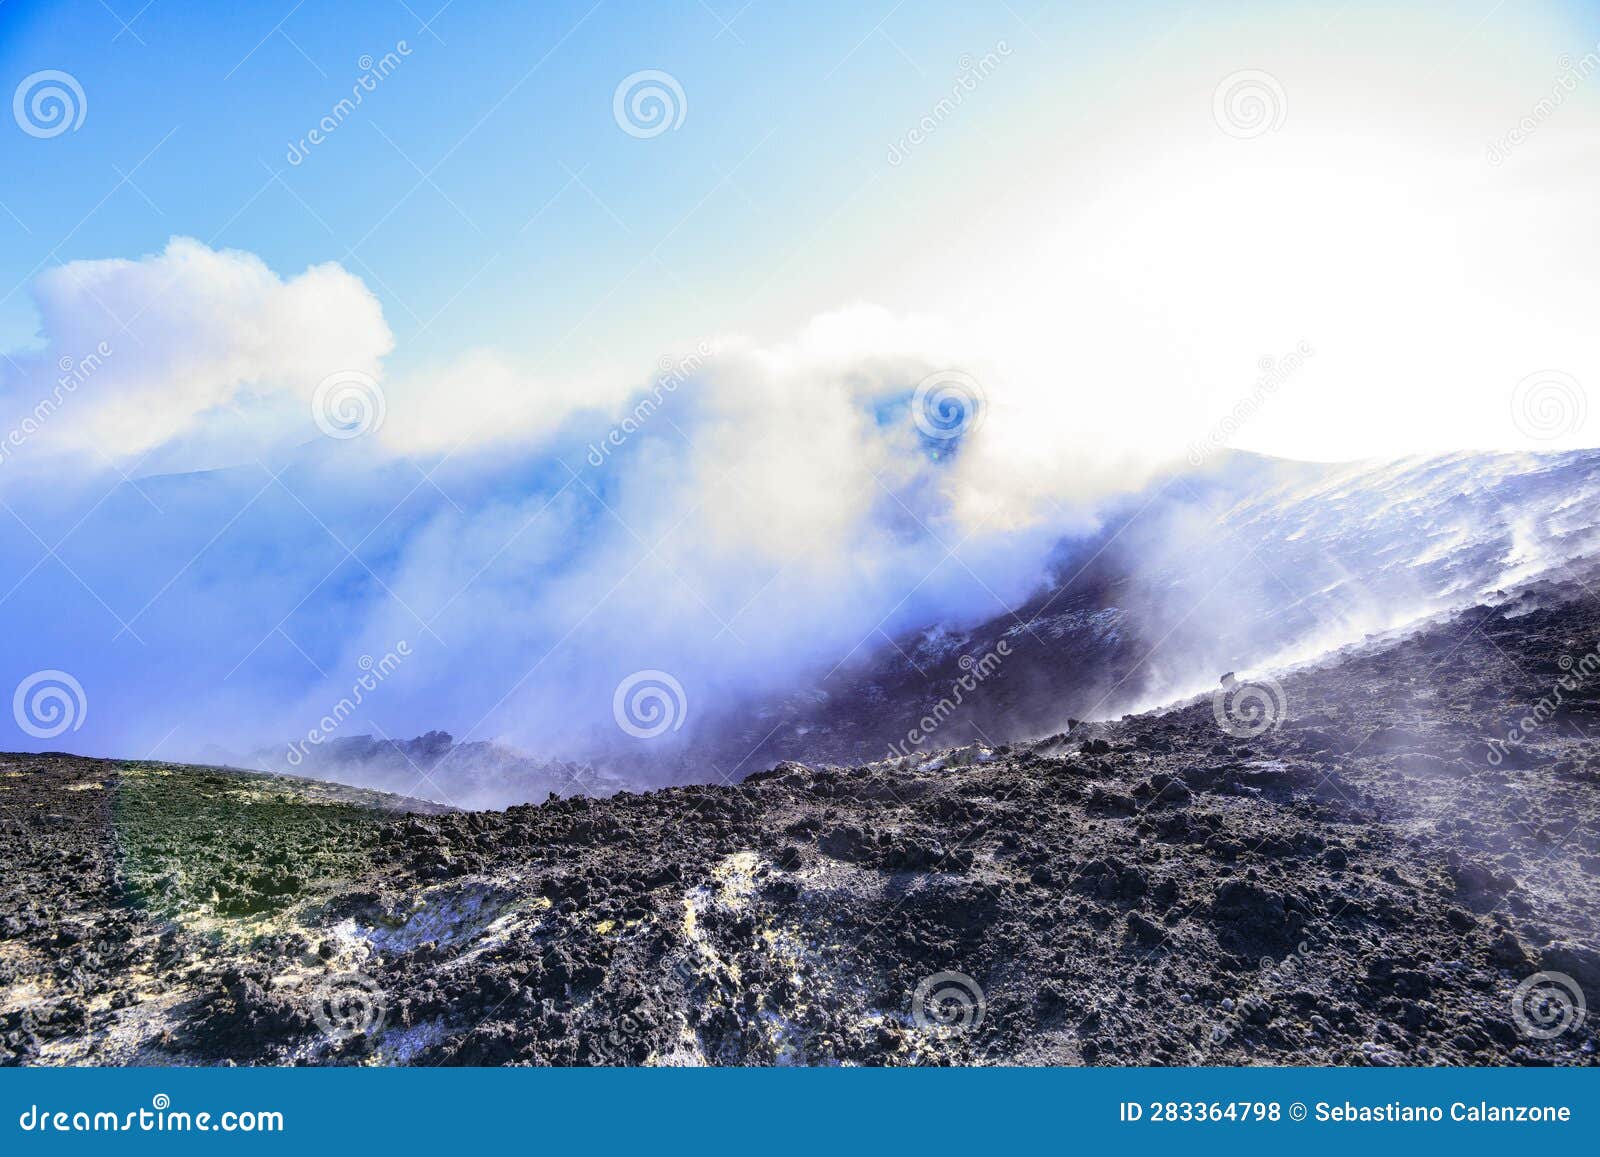 cratere etna - vista panoramica durante giornata di sole con emissione di vapore e gas